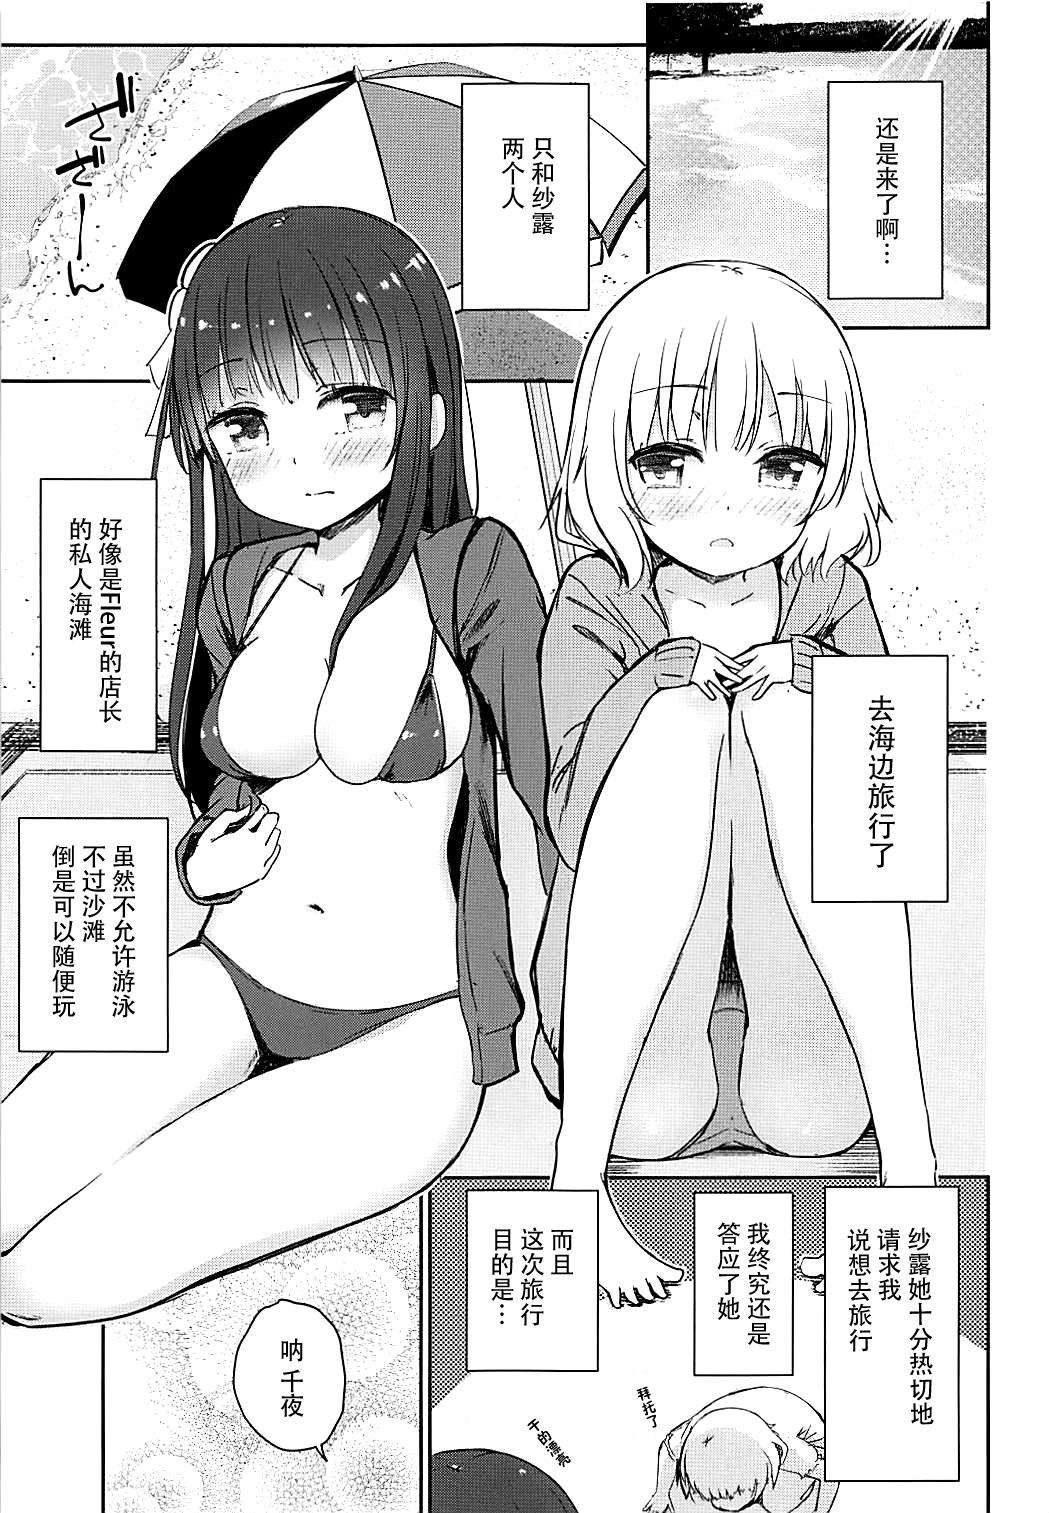 Shemales Best Friend Sex 2 - Gochuumon wa usagi desu ka Female Orgasm - Page 4